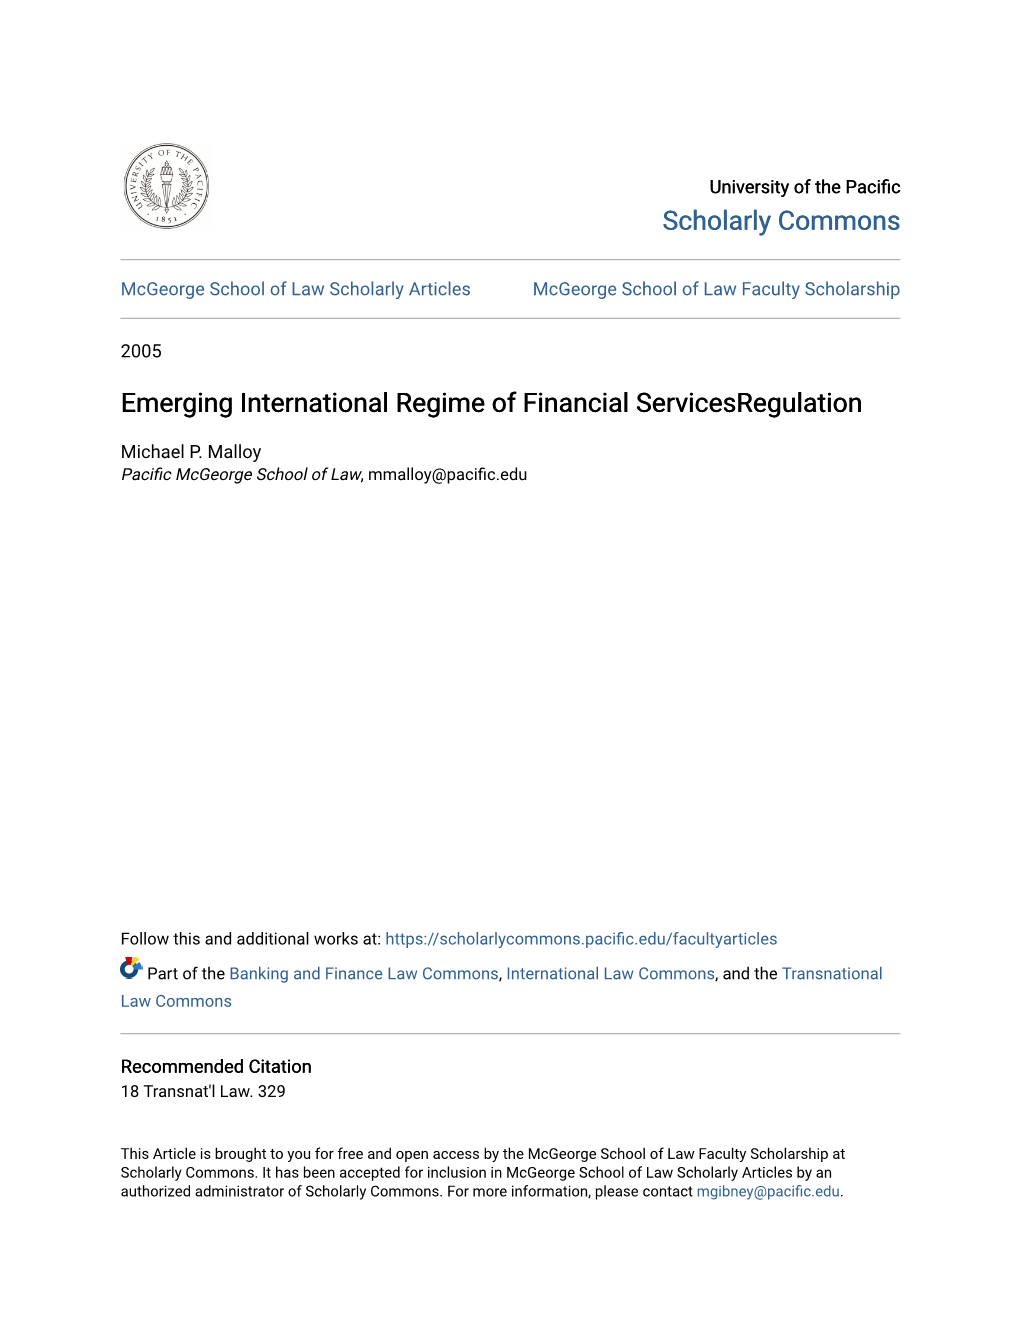 Emerging International Regime of Financial Servicesregulation